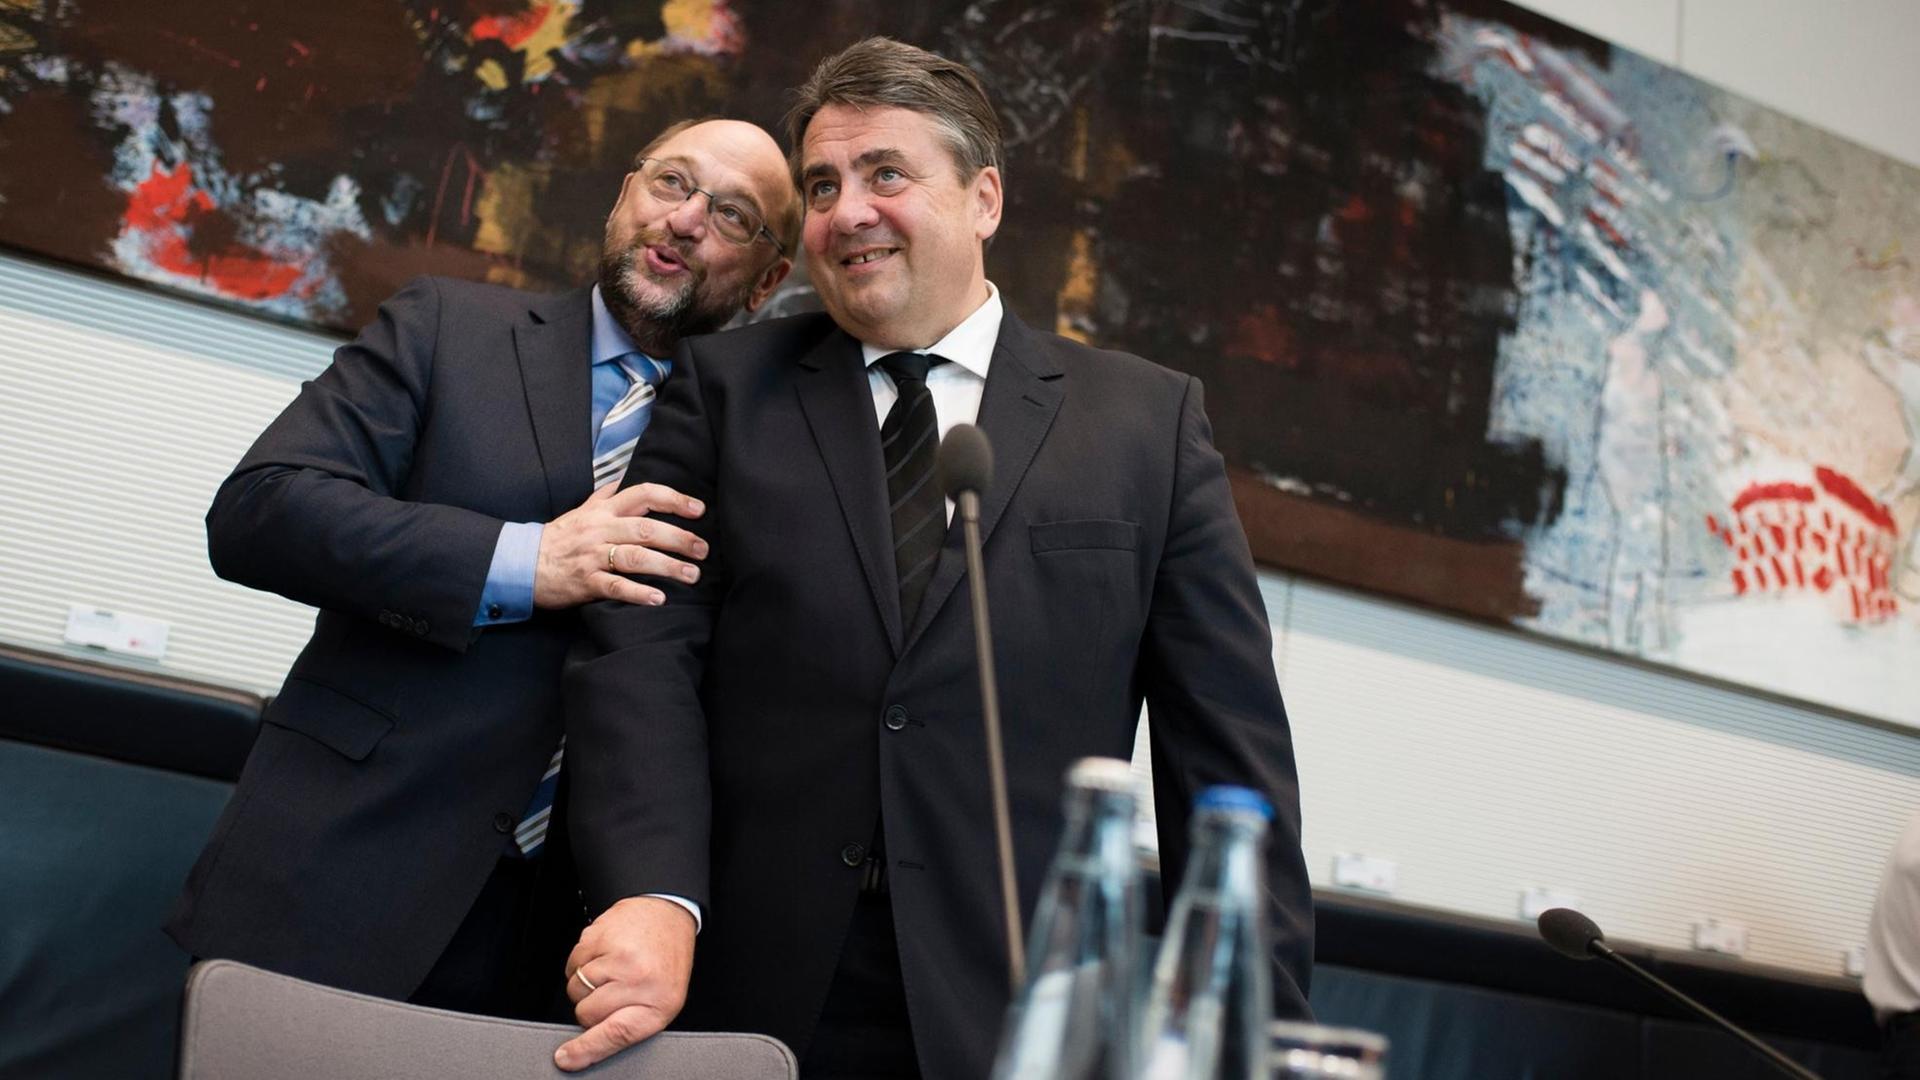 Der Präsident des Europäischen Parlaments, Martin Schulz, und Bundeswirtschaftsminister Sigmar Gabriel. Sie lächeln, Schulz legt seine Hand auf Gabriels Arm.